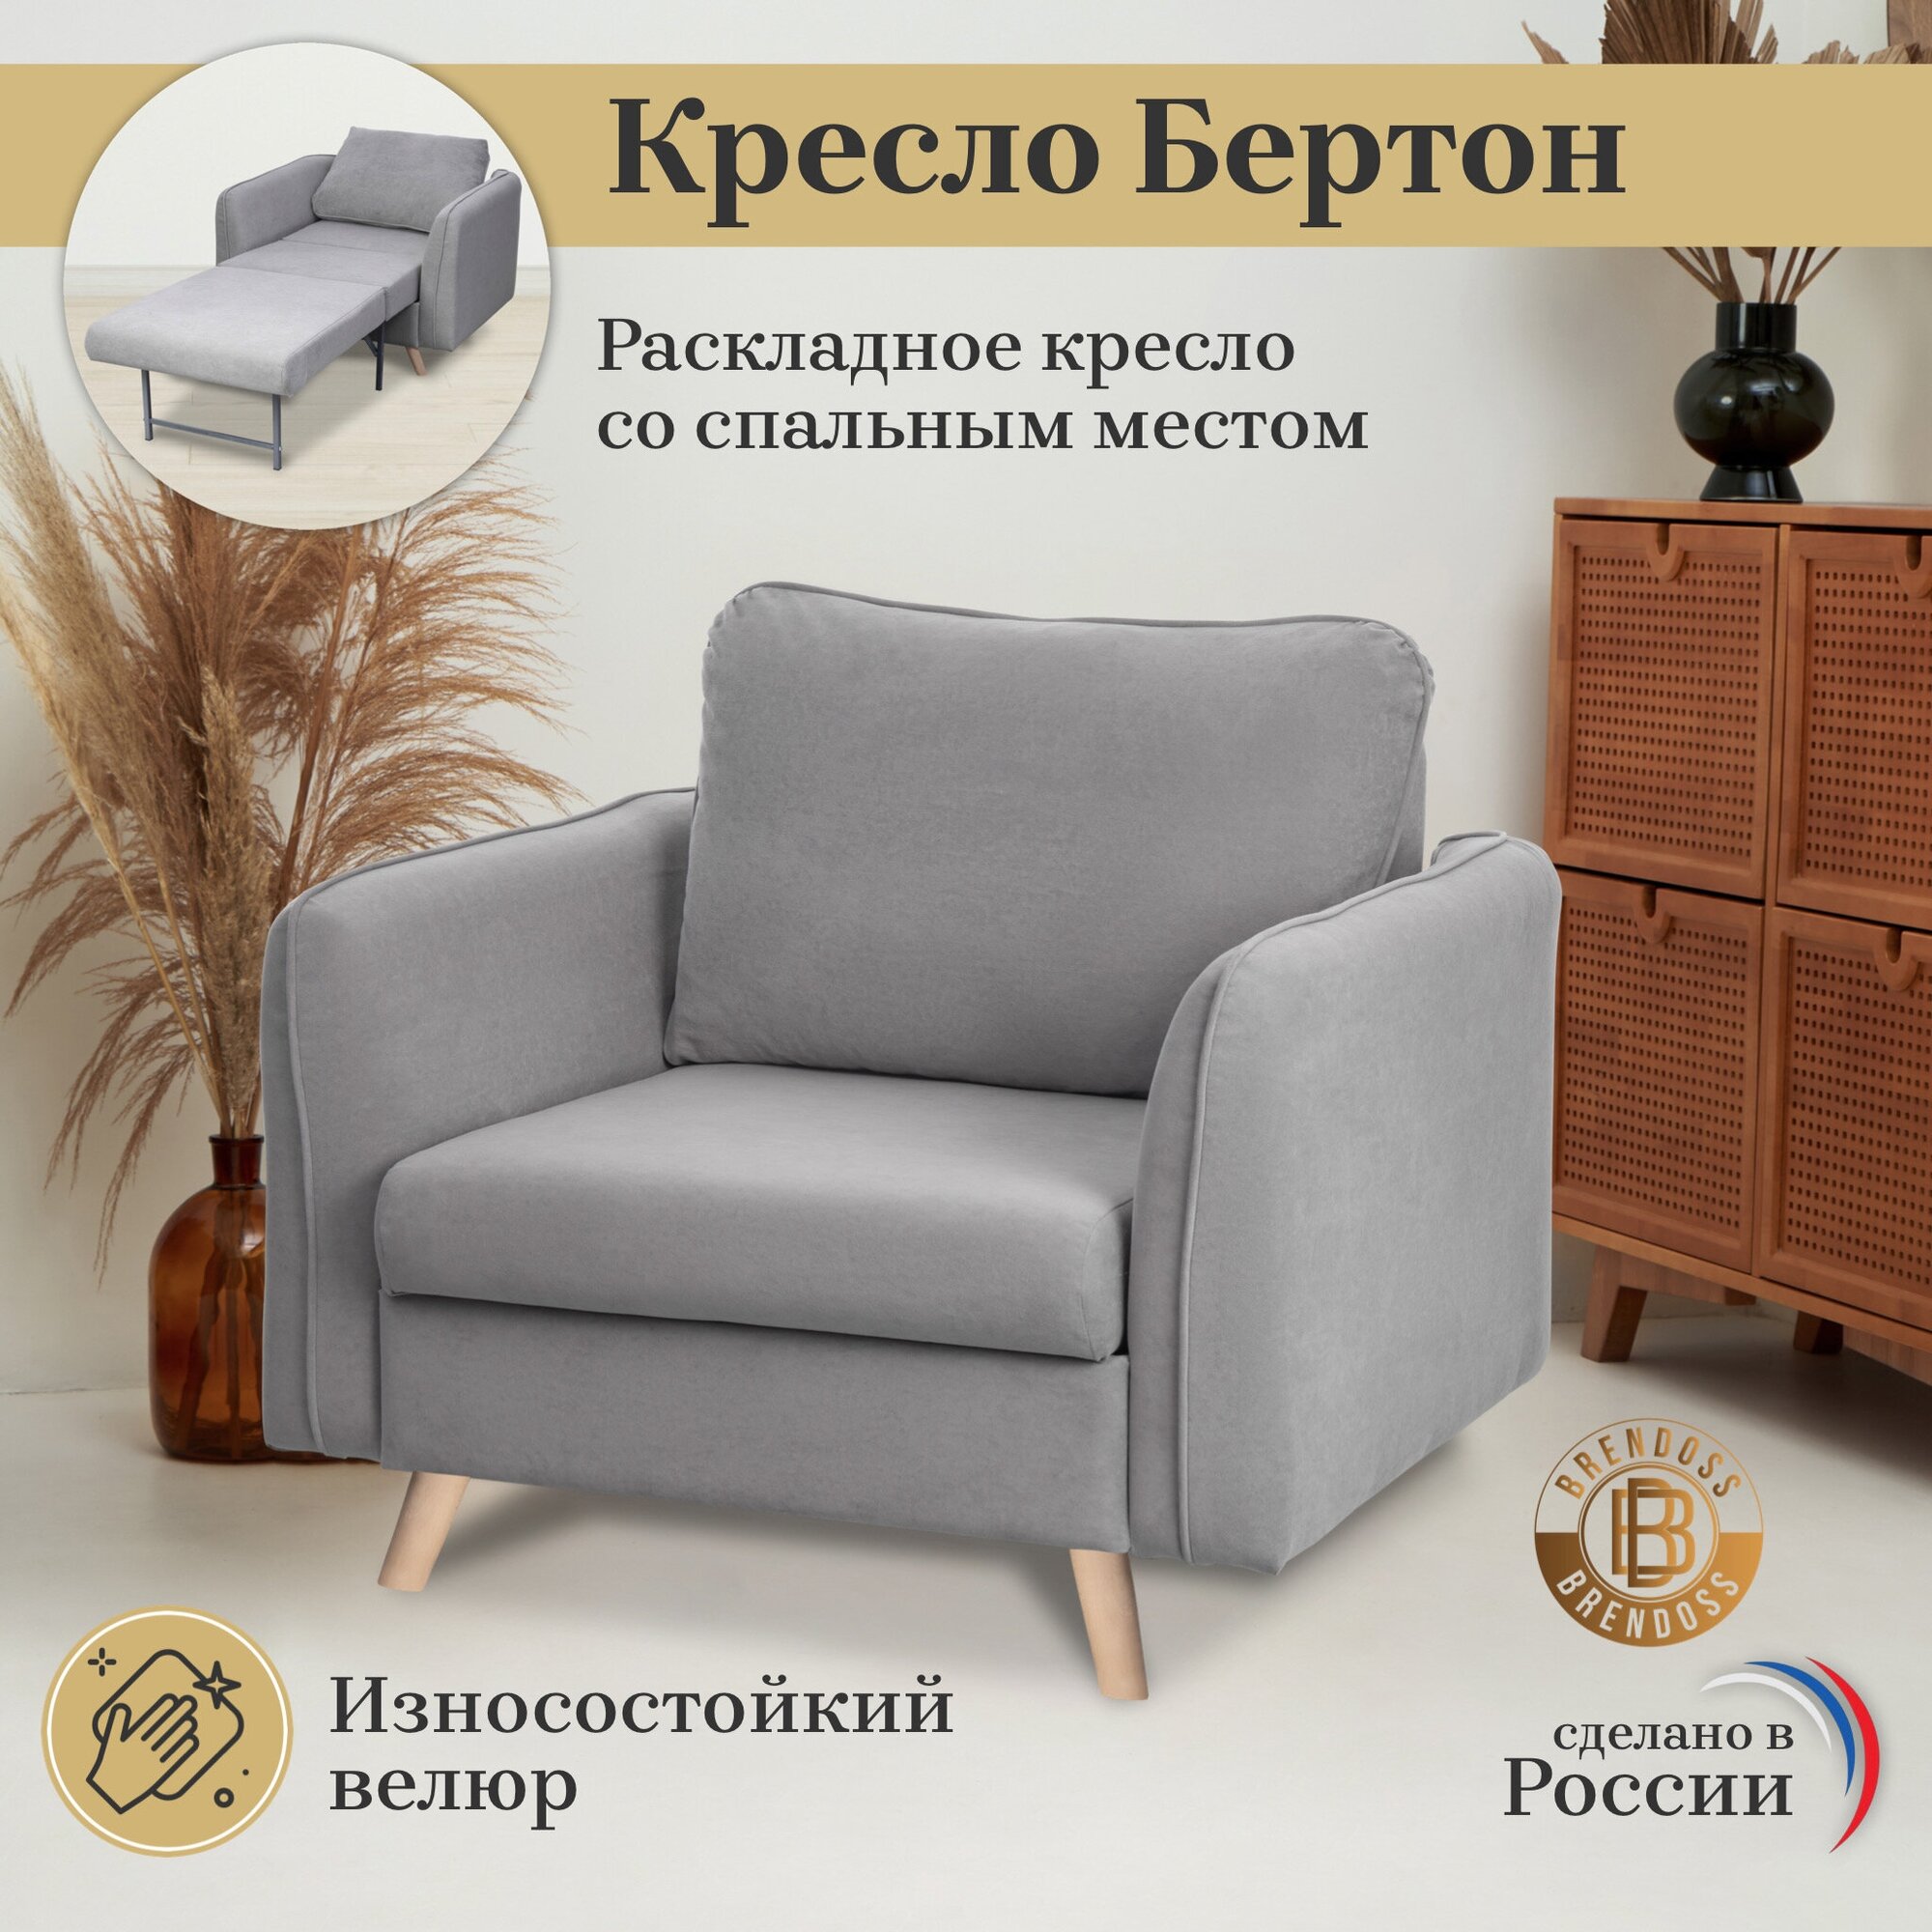 Кресло-кровать Brendoss 6135 цвет серый